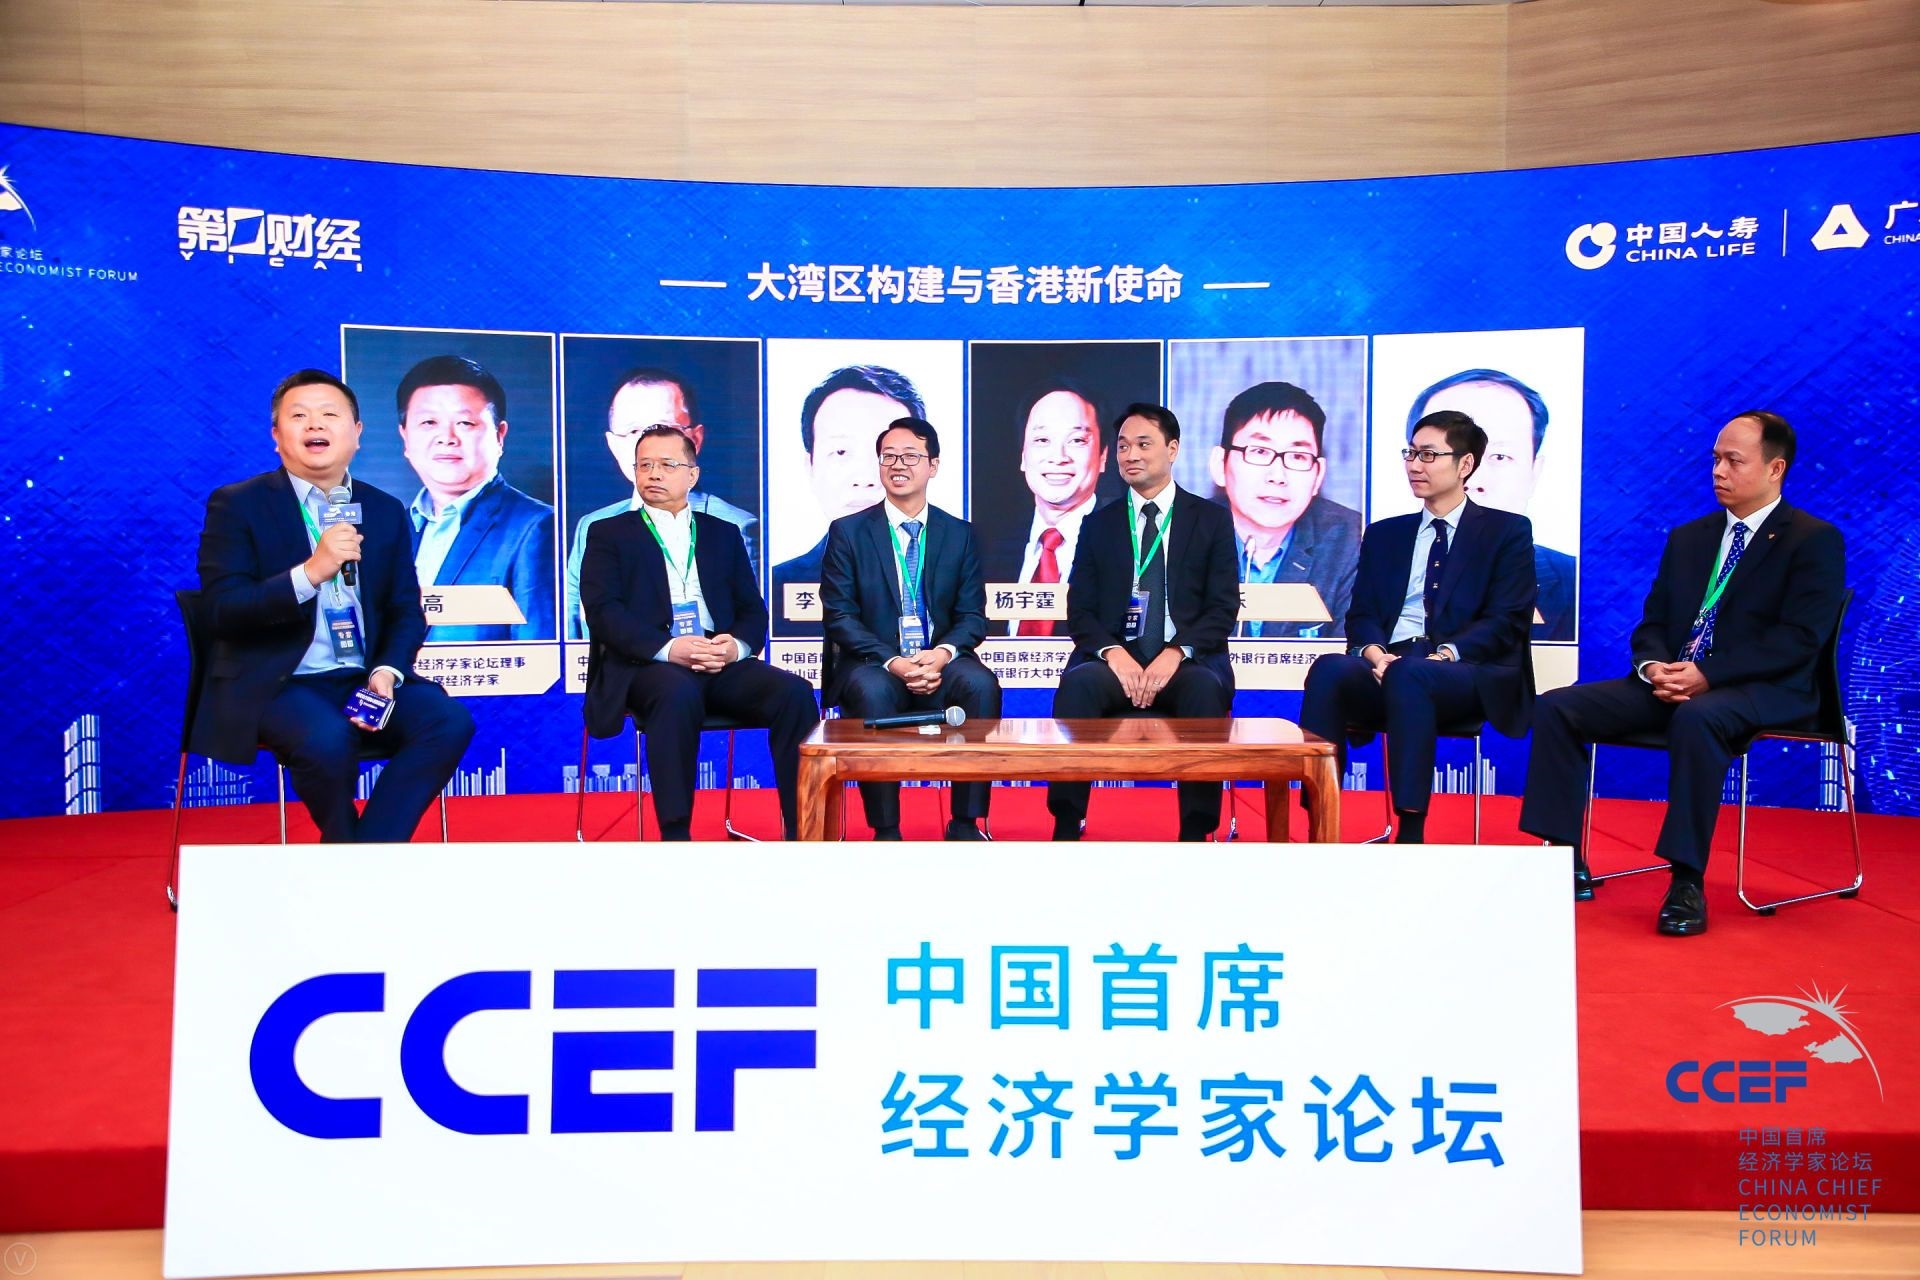 2019中國首席經濟學家論壇（香港）隆重舉行 中國開放新格局與粵港澳大灣區新機遇